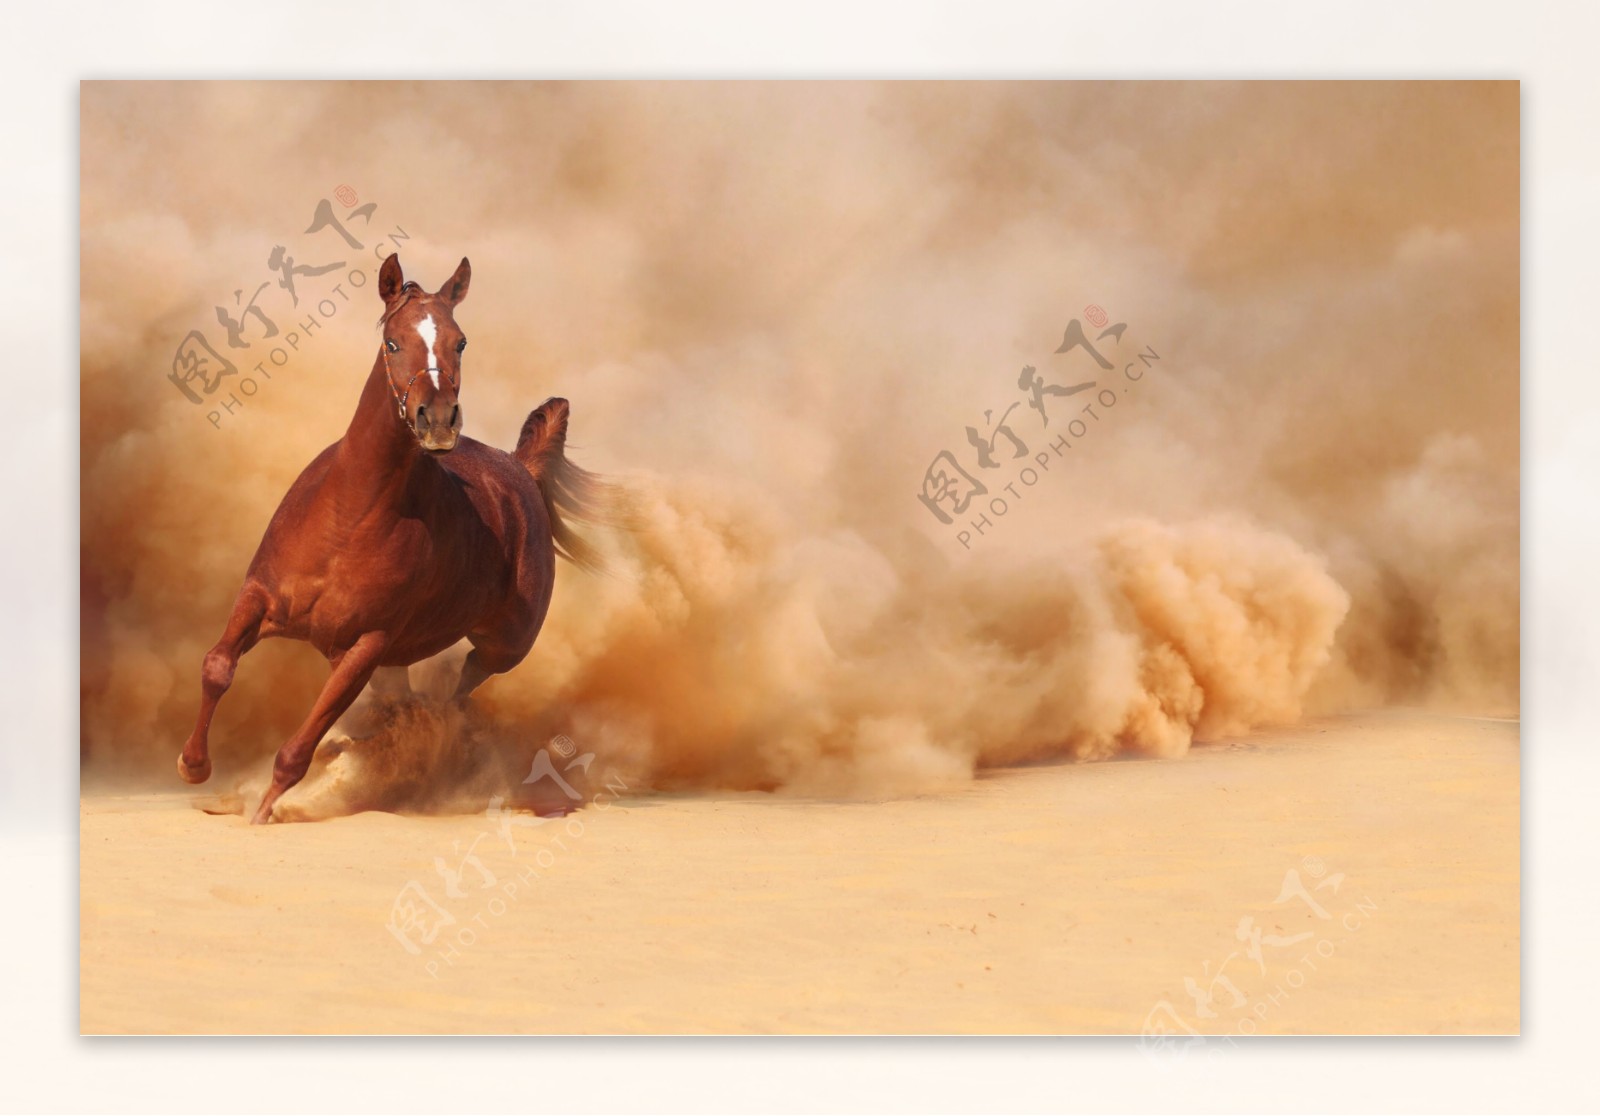 沙漠上奔跑的骏马图片